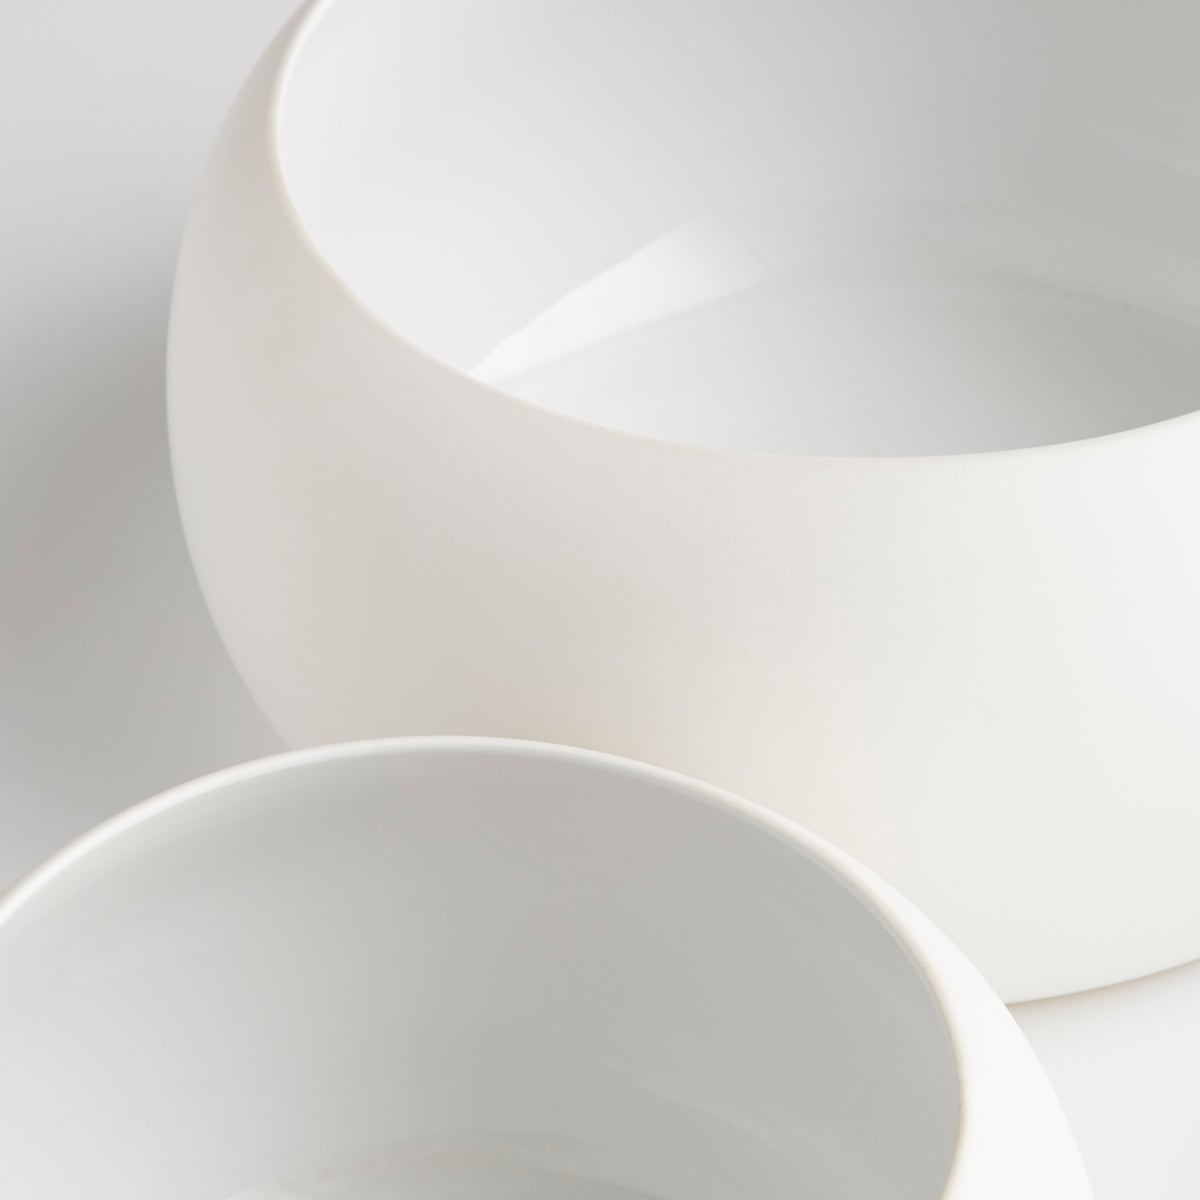 Purezza Bowl | White - Medium